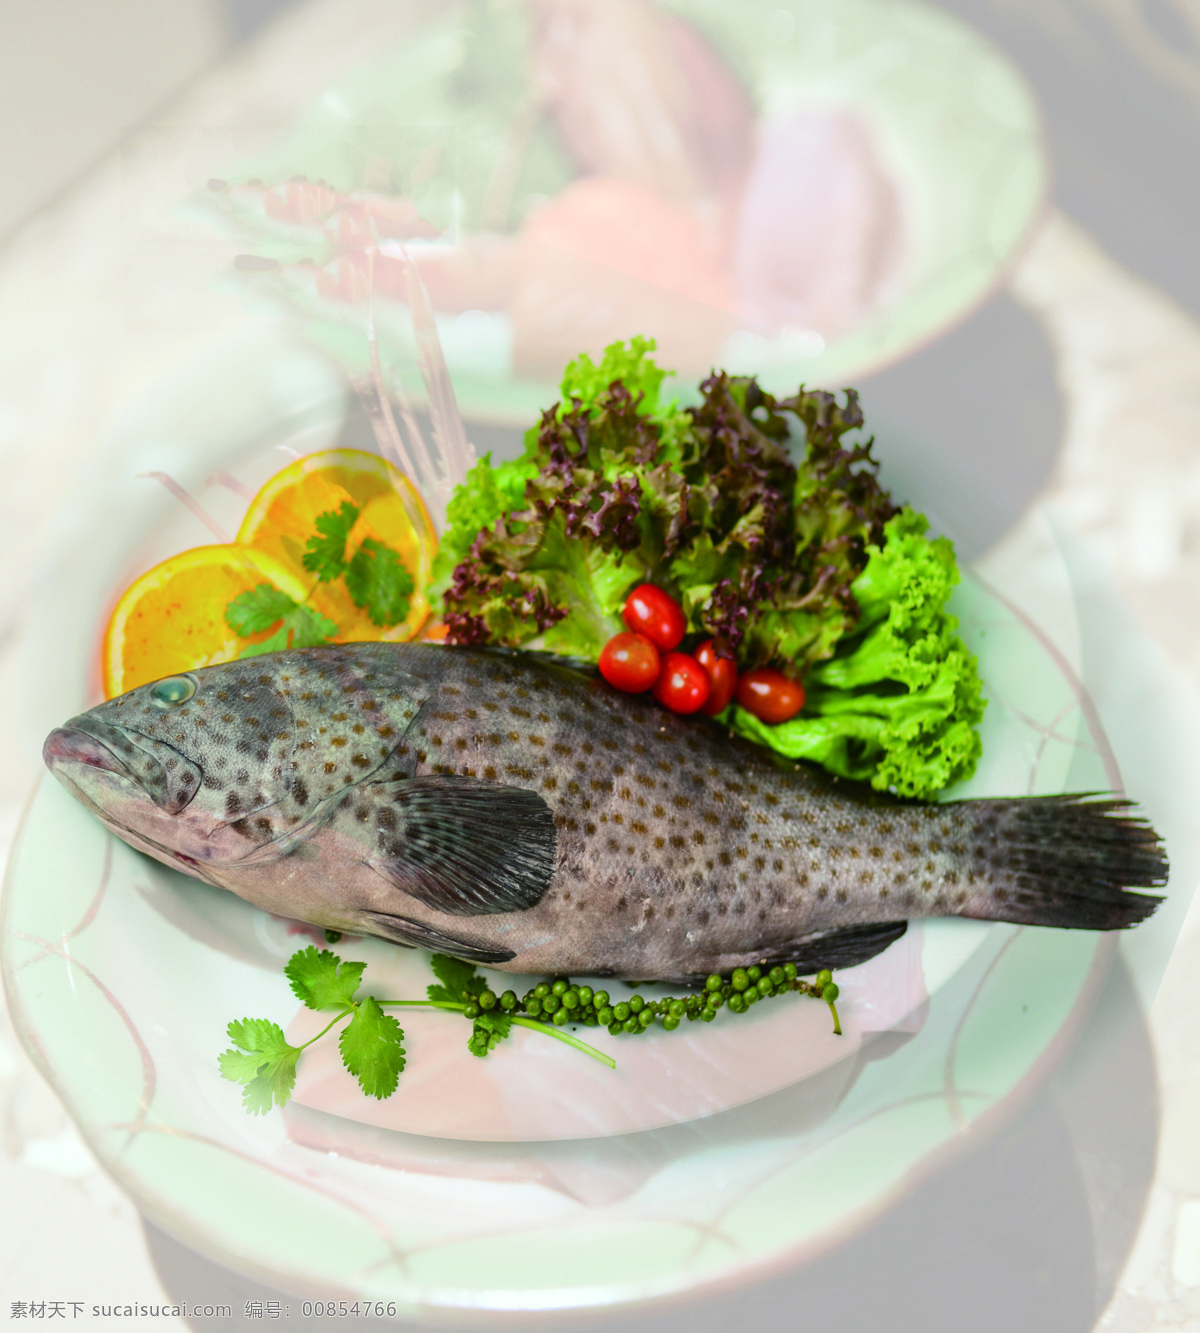 石斑鱼 高清 鱼 挂轴 大图 食物原料 餐饮美食